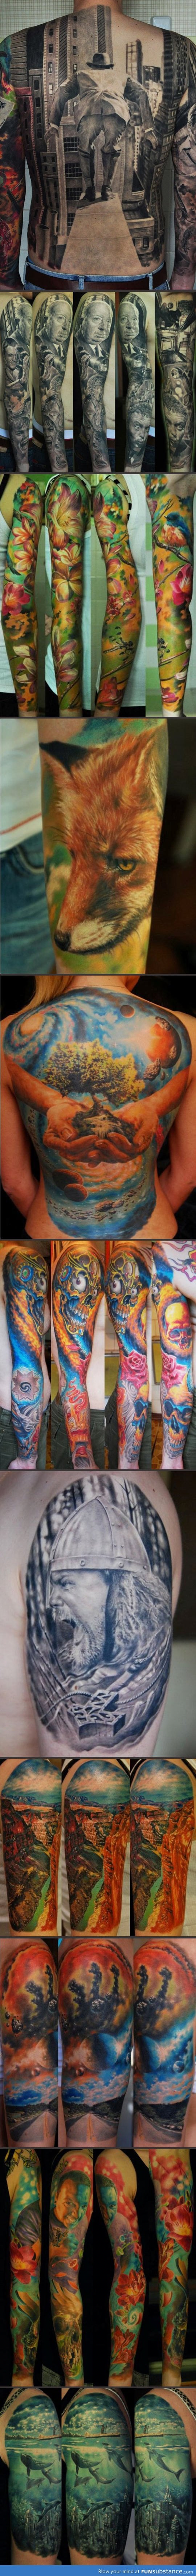 Wonderful tattoo designs